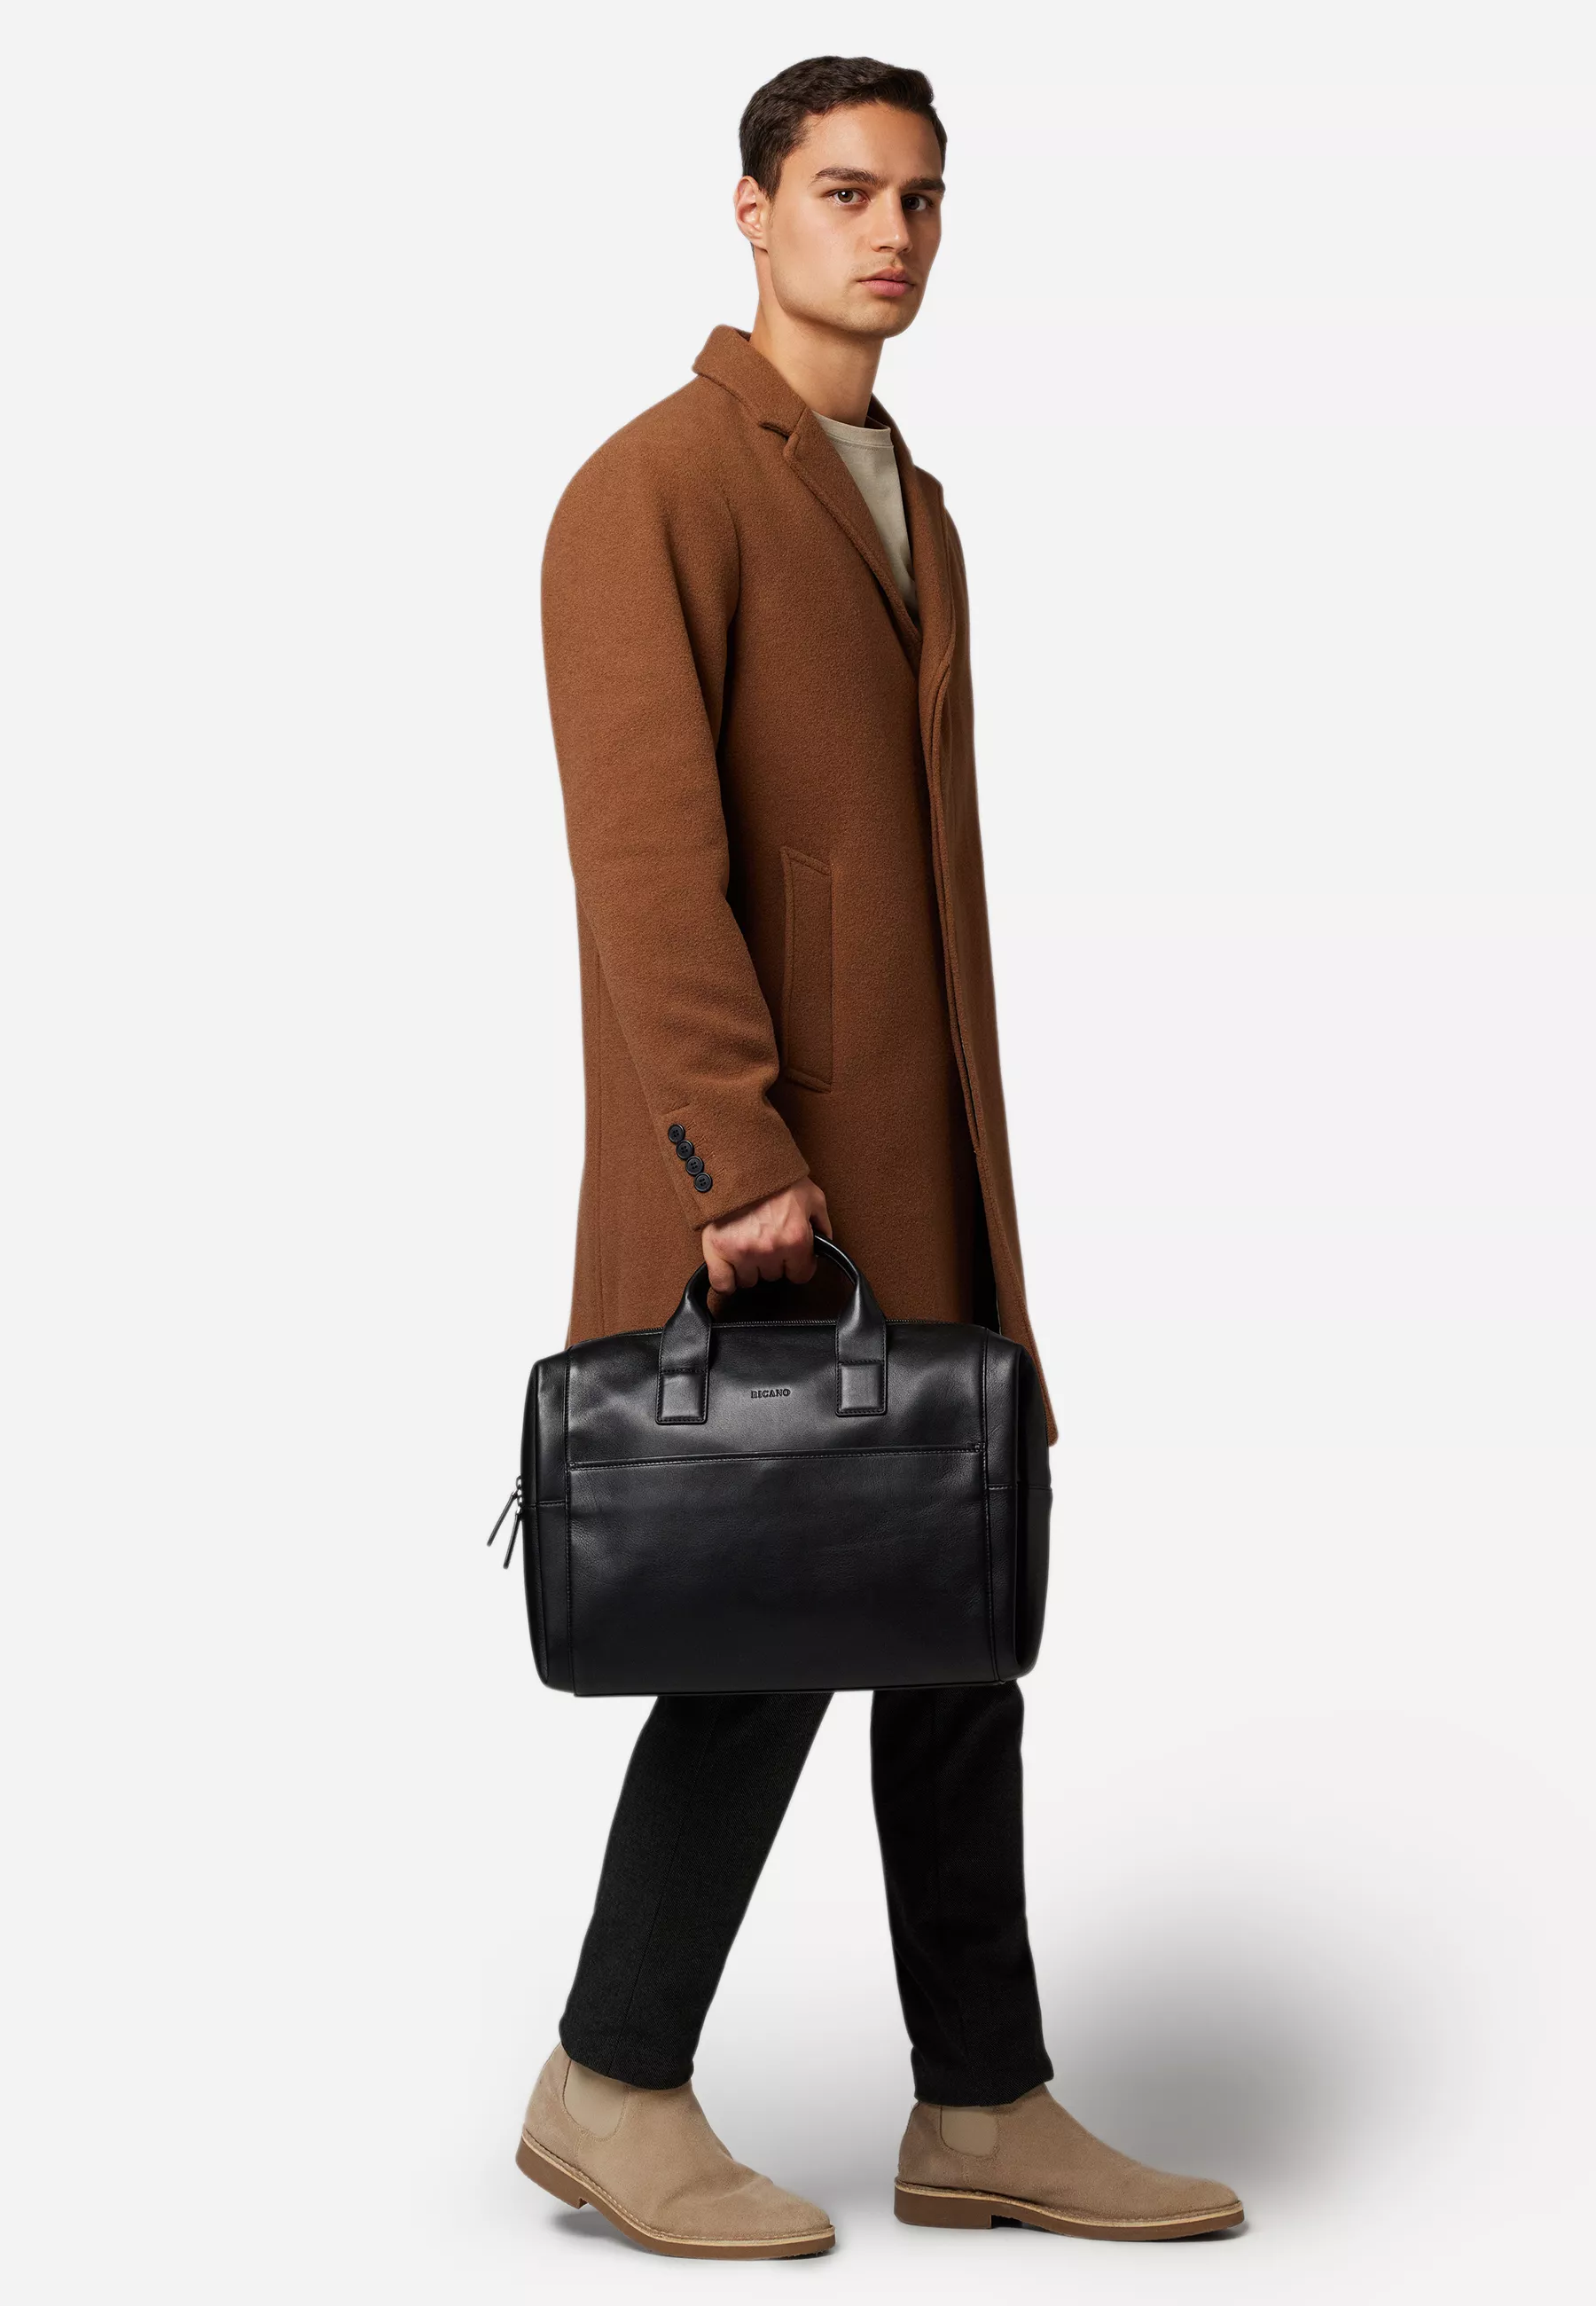 Herren Ledertasche Laptoptasche Noah in schwarz von RICANO, Vollansicht am Model